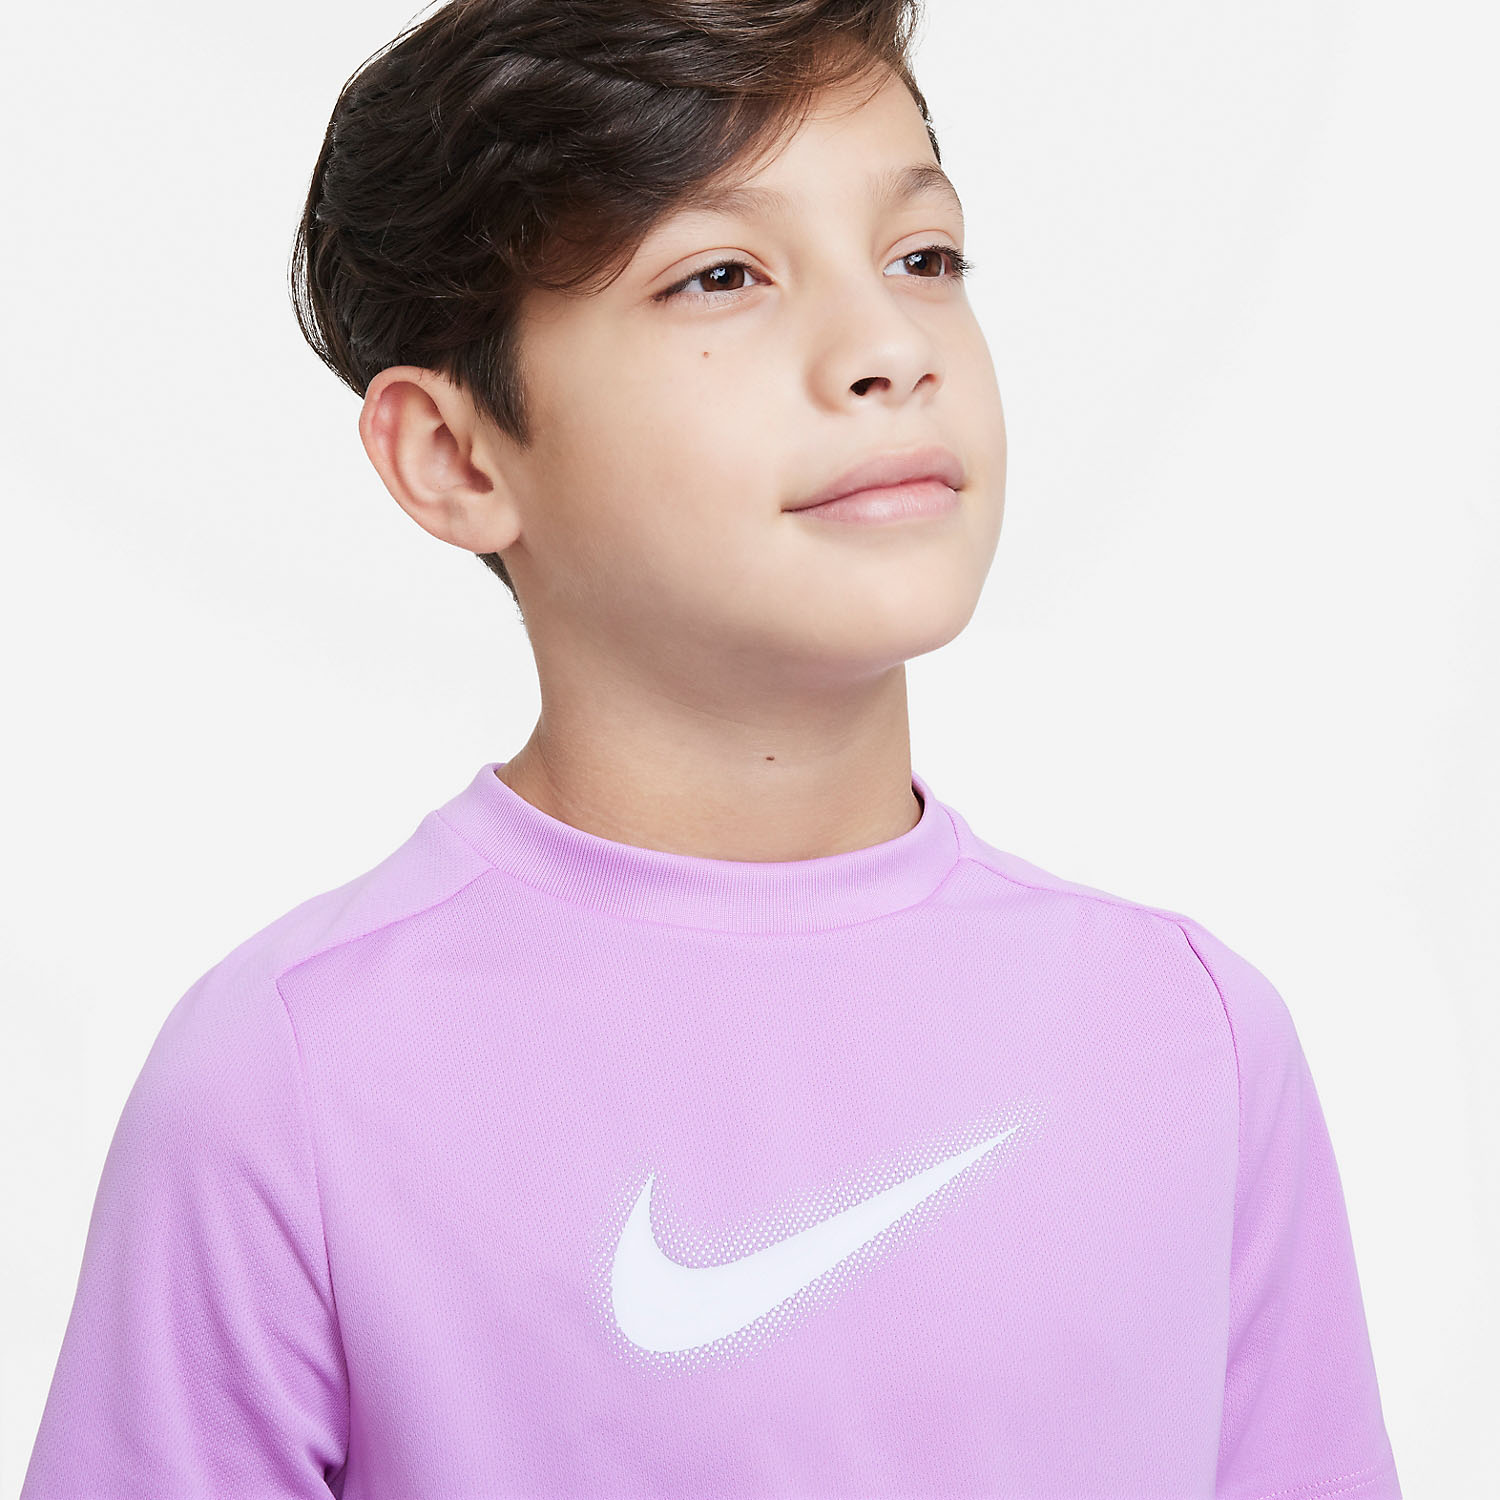 Nike Dri-FIT Icon Camiseta Niño - Rush Fuchsia/White